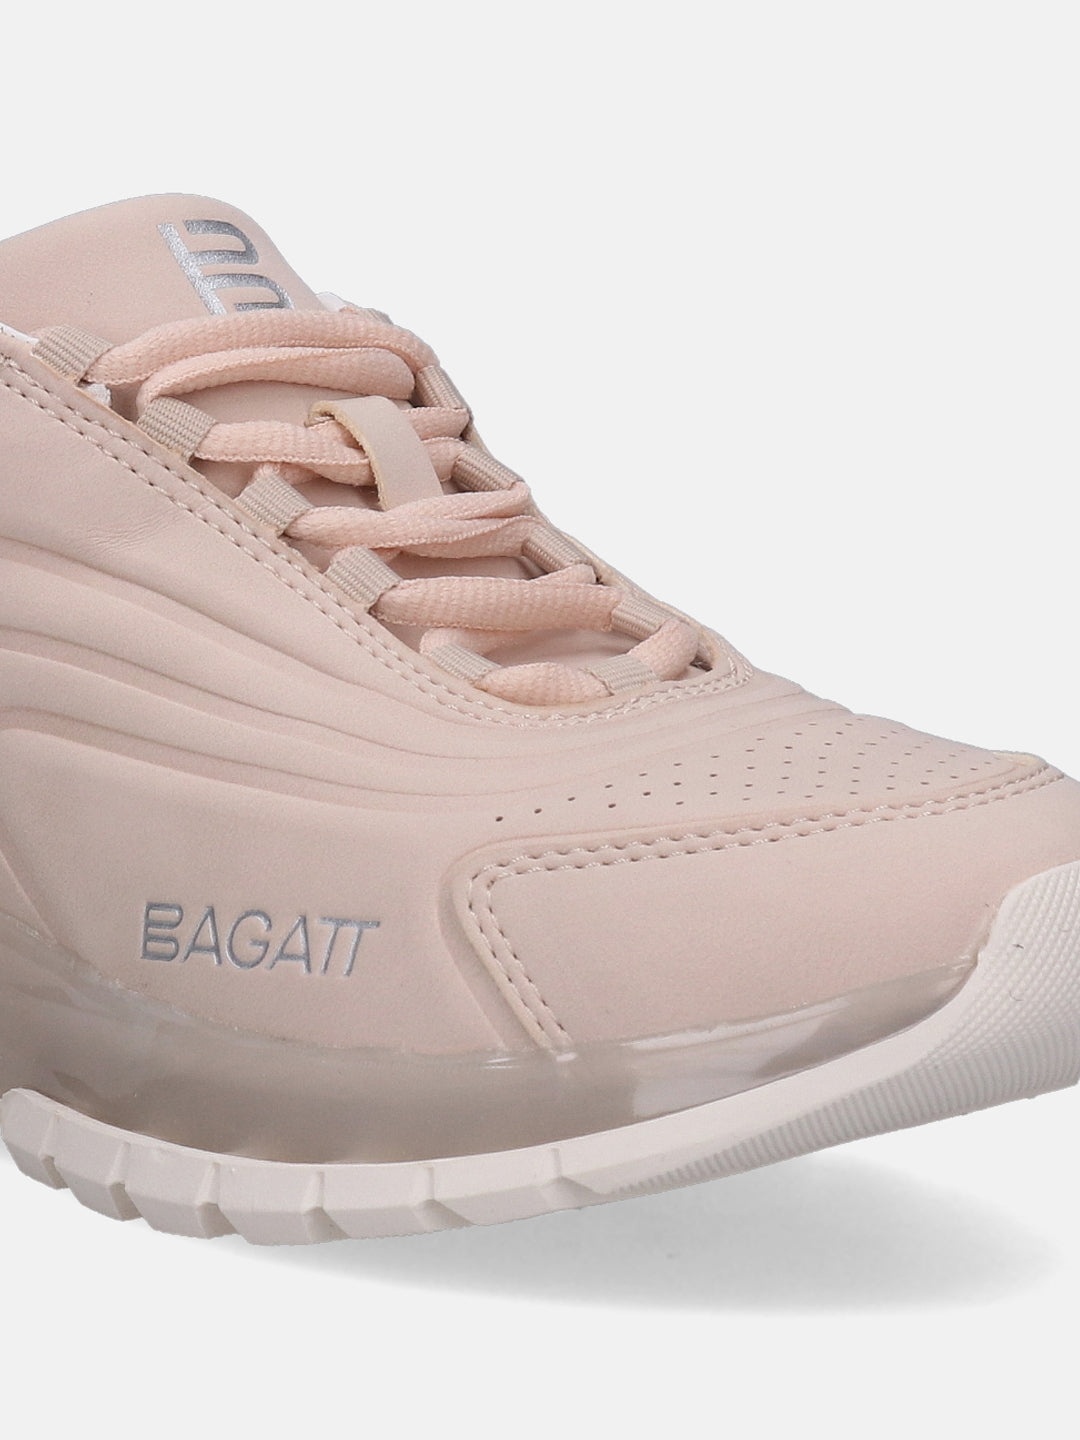 Athena Rose Pink Sneakers - BAGATT